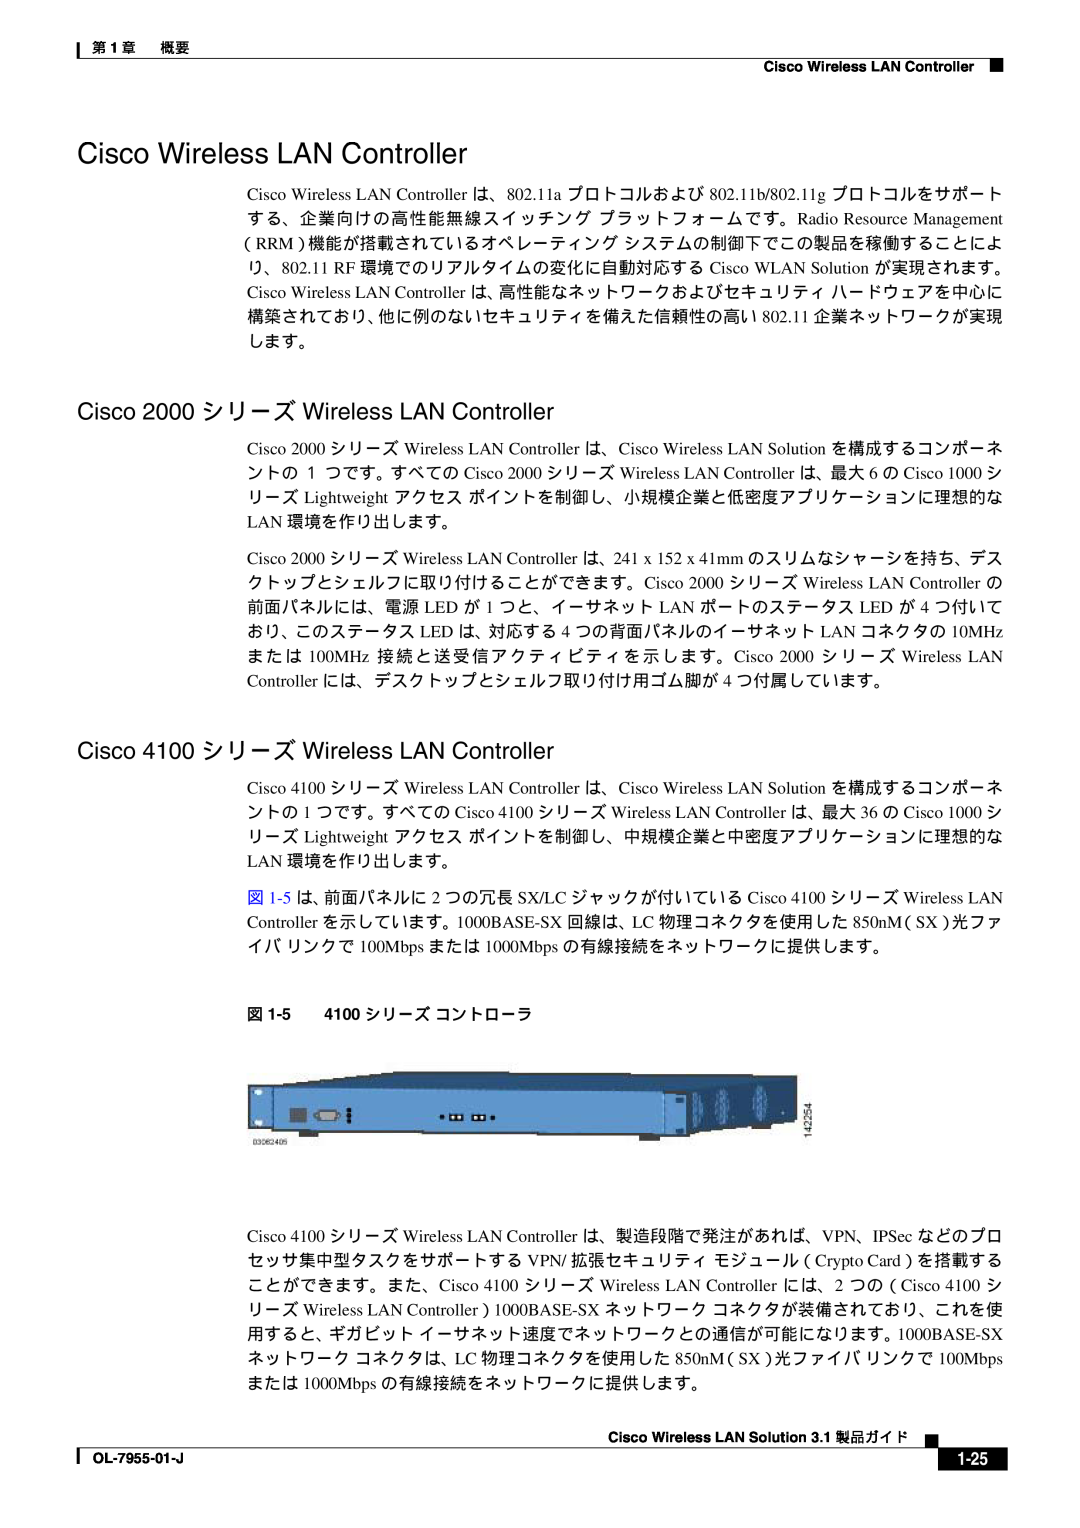 Cisco Systems 3.1 manual Cisco 2000 シリーズ Wireless LAN Controller, Cisco 4100 シリーズ Wireless LAN Controller, 1-25 